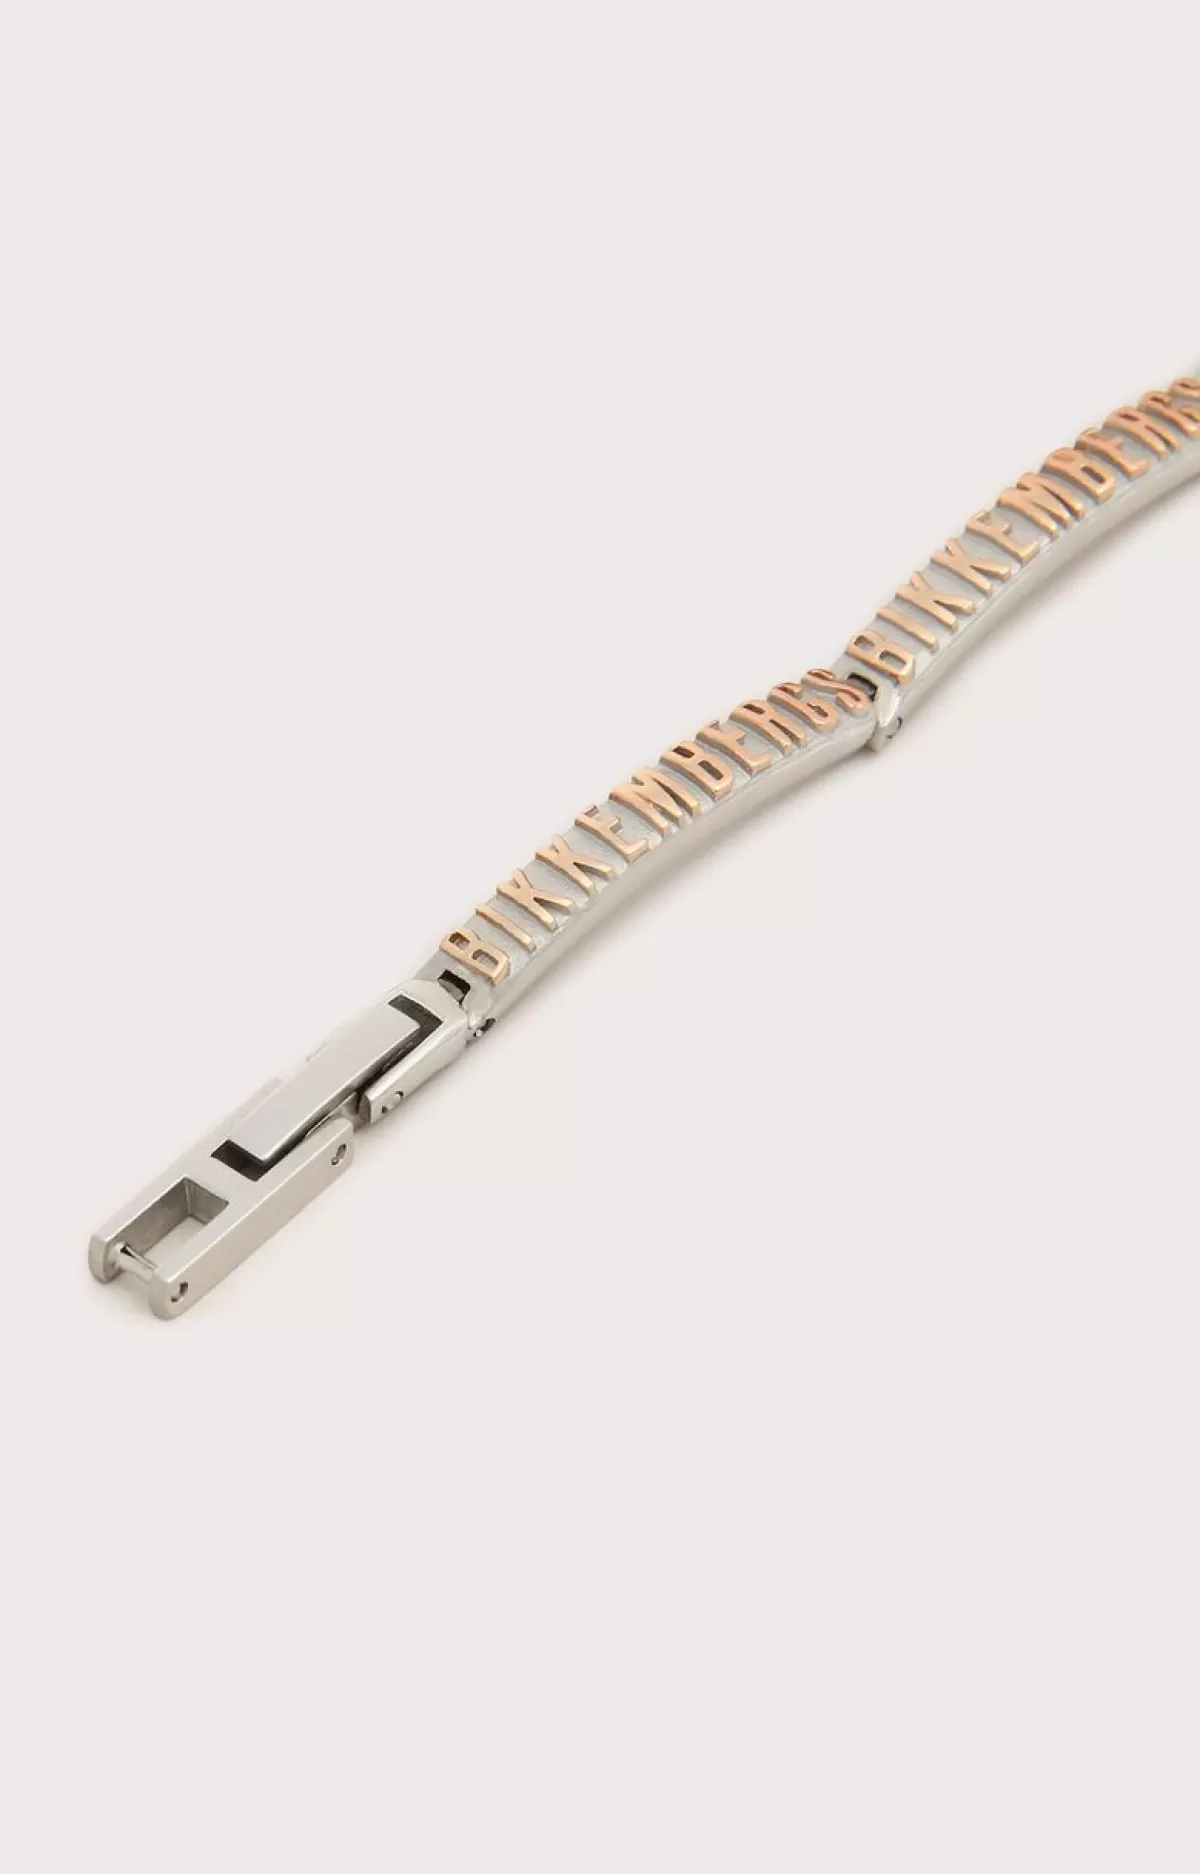 Bikkembergs Men'S Bracelet With Embossed Lettering 290 Sale